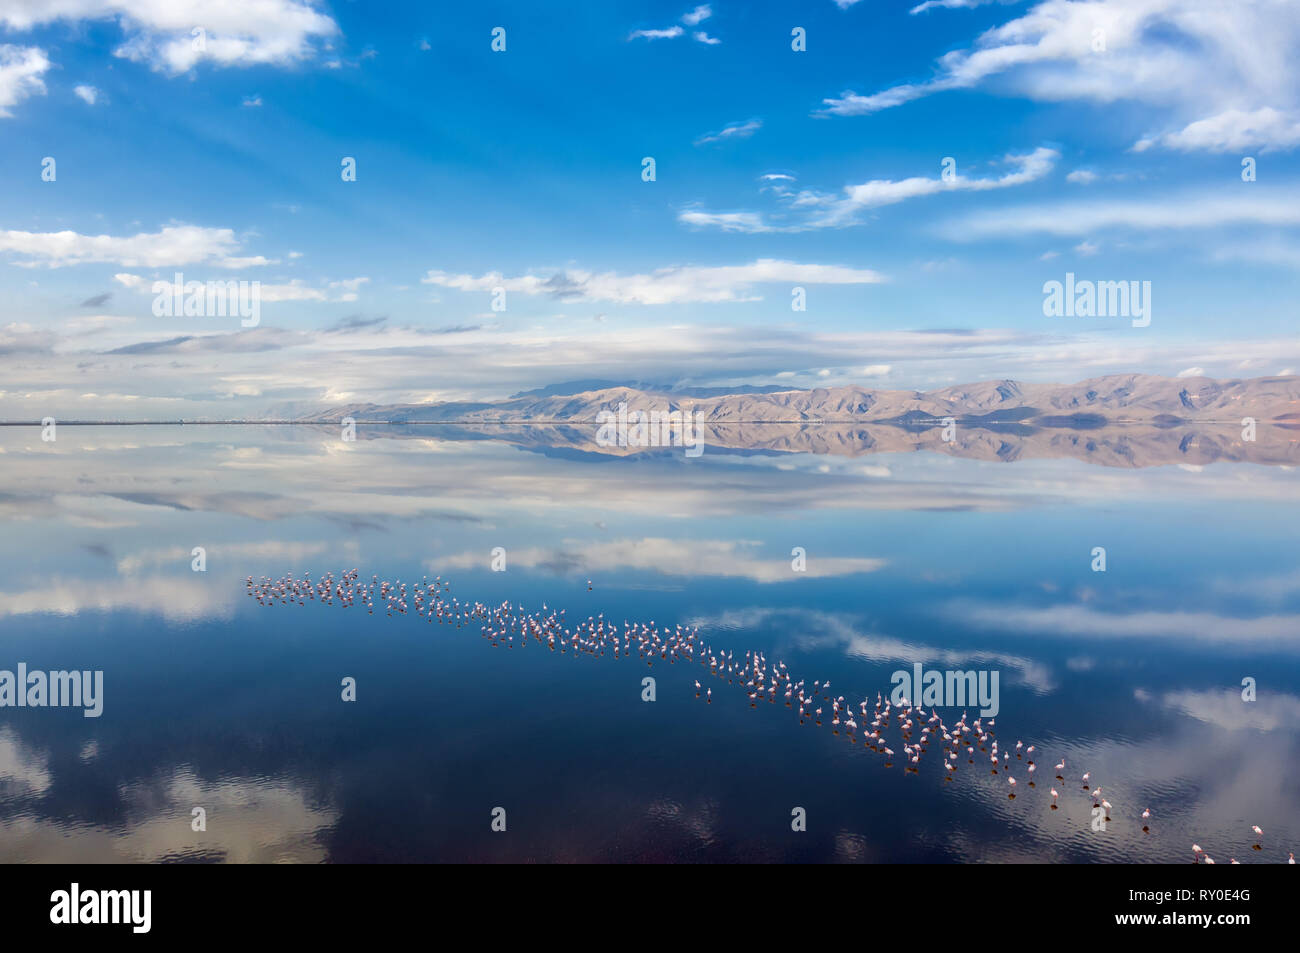 Rosa Maharlu lago vicino a Shiraz in Iran, prendere nel gennaio 2019 prese in hdr Foto Stock